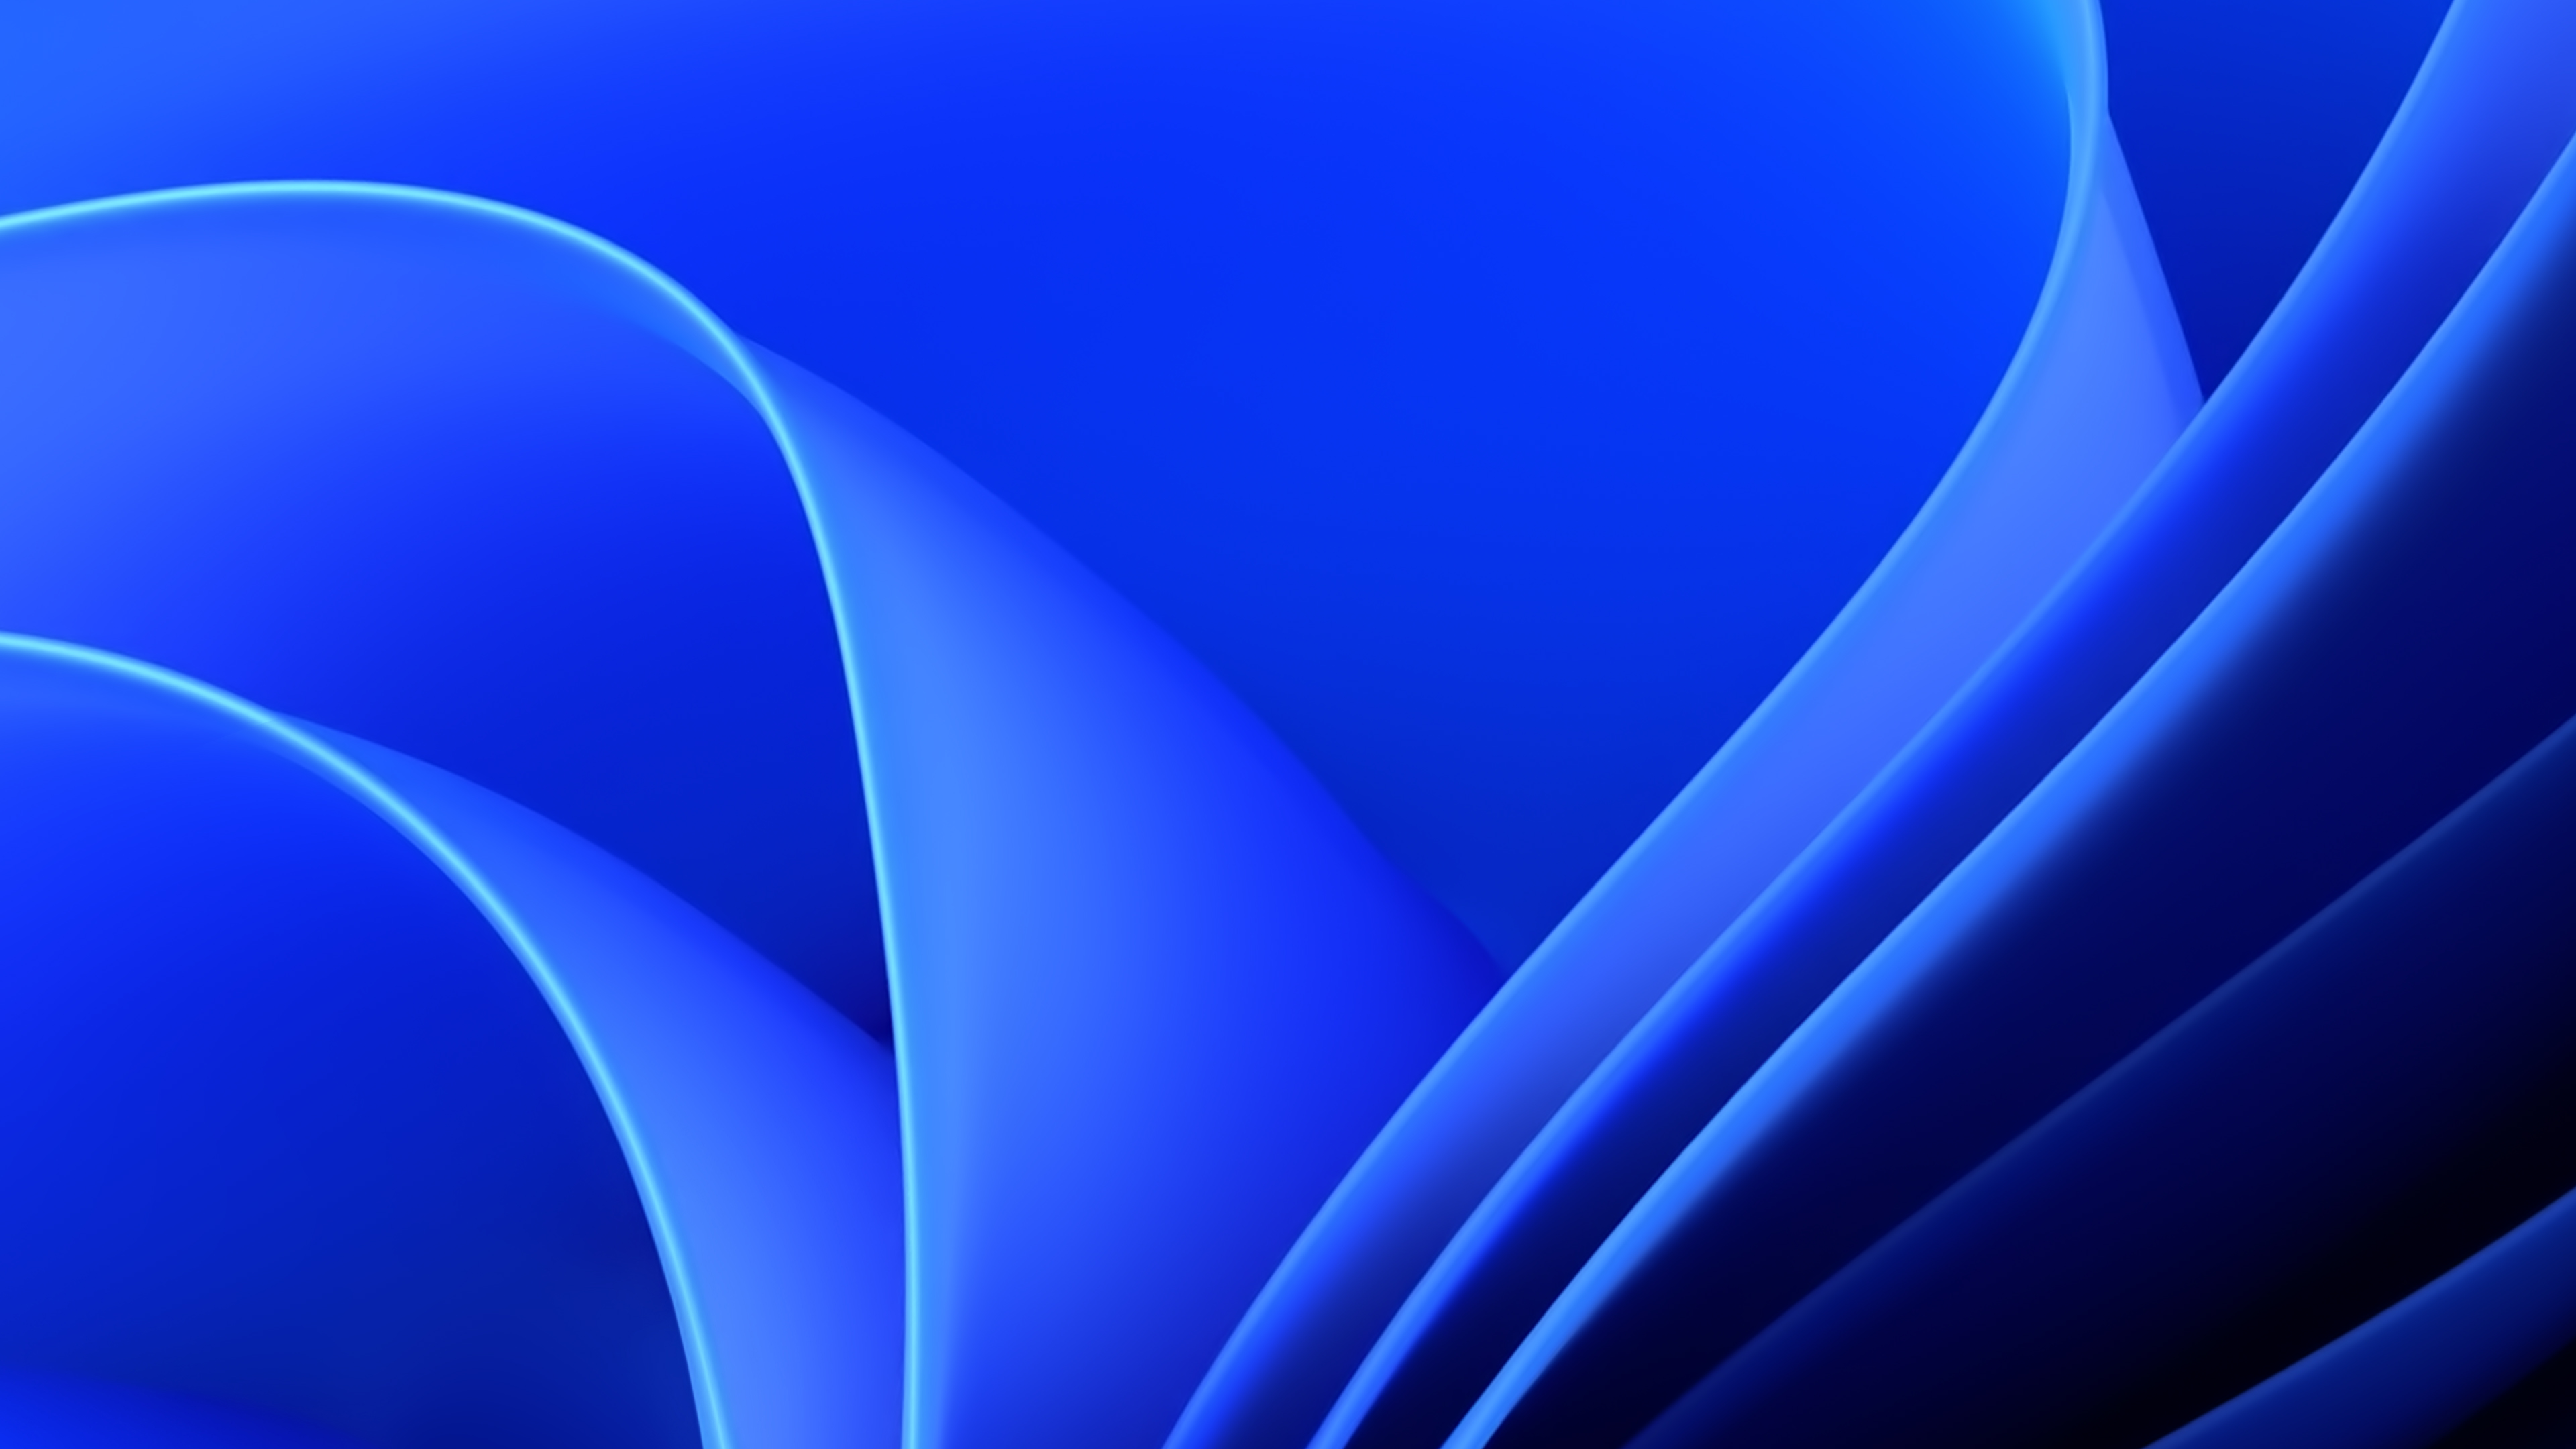 Windows 4k Ultra HD Wallpaper Blue Mocah